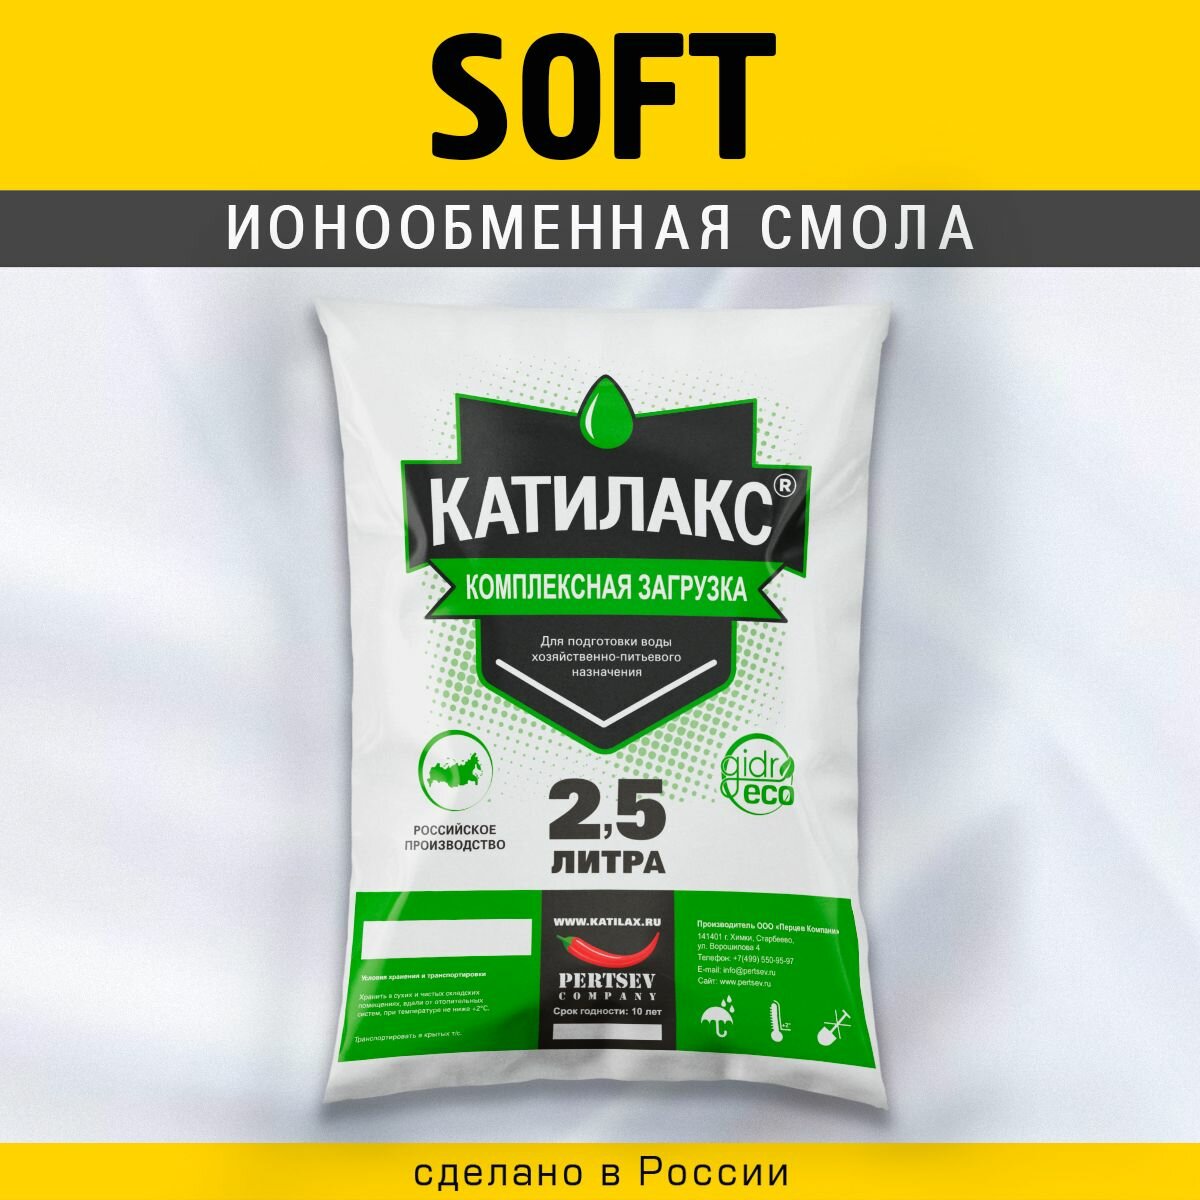 Ионообменная смола Катилакс - Soft (Мешок 2,5 литра)